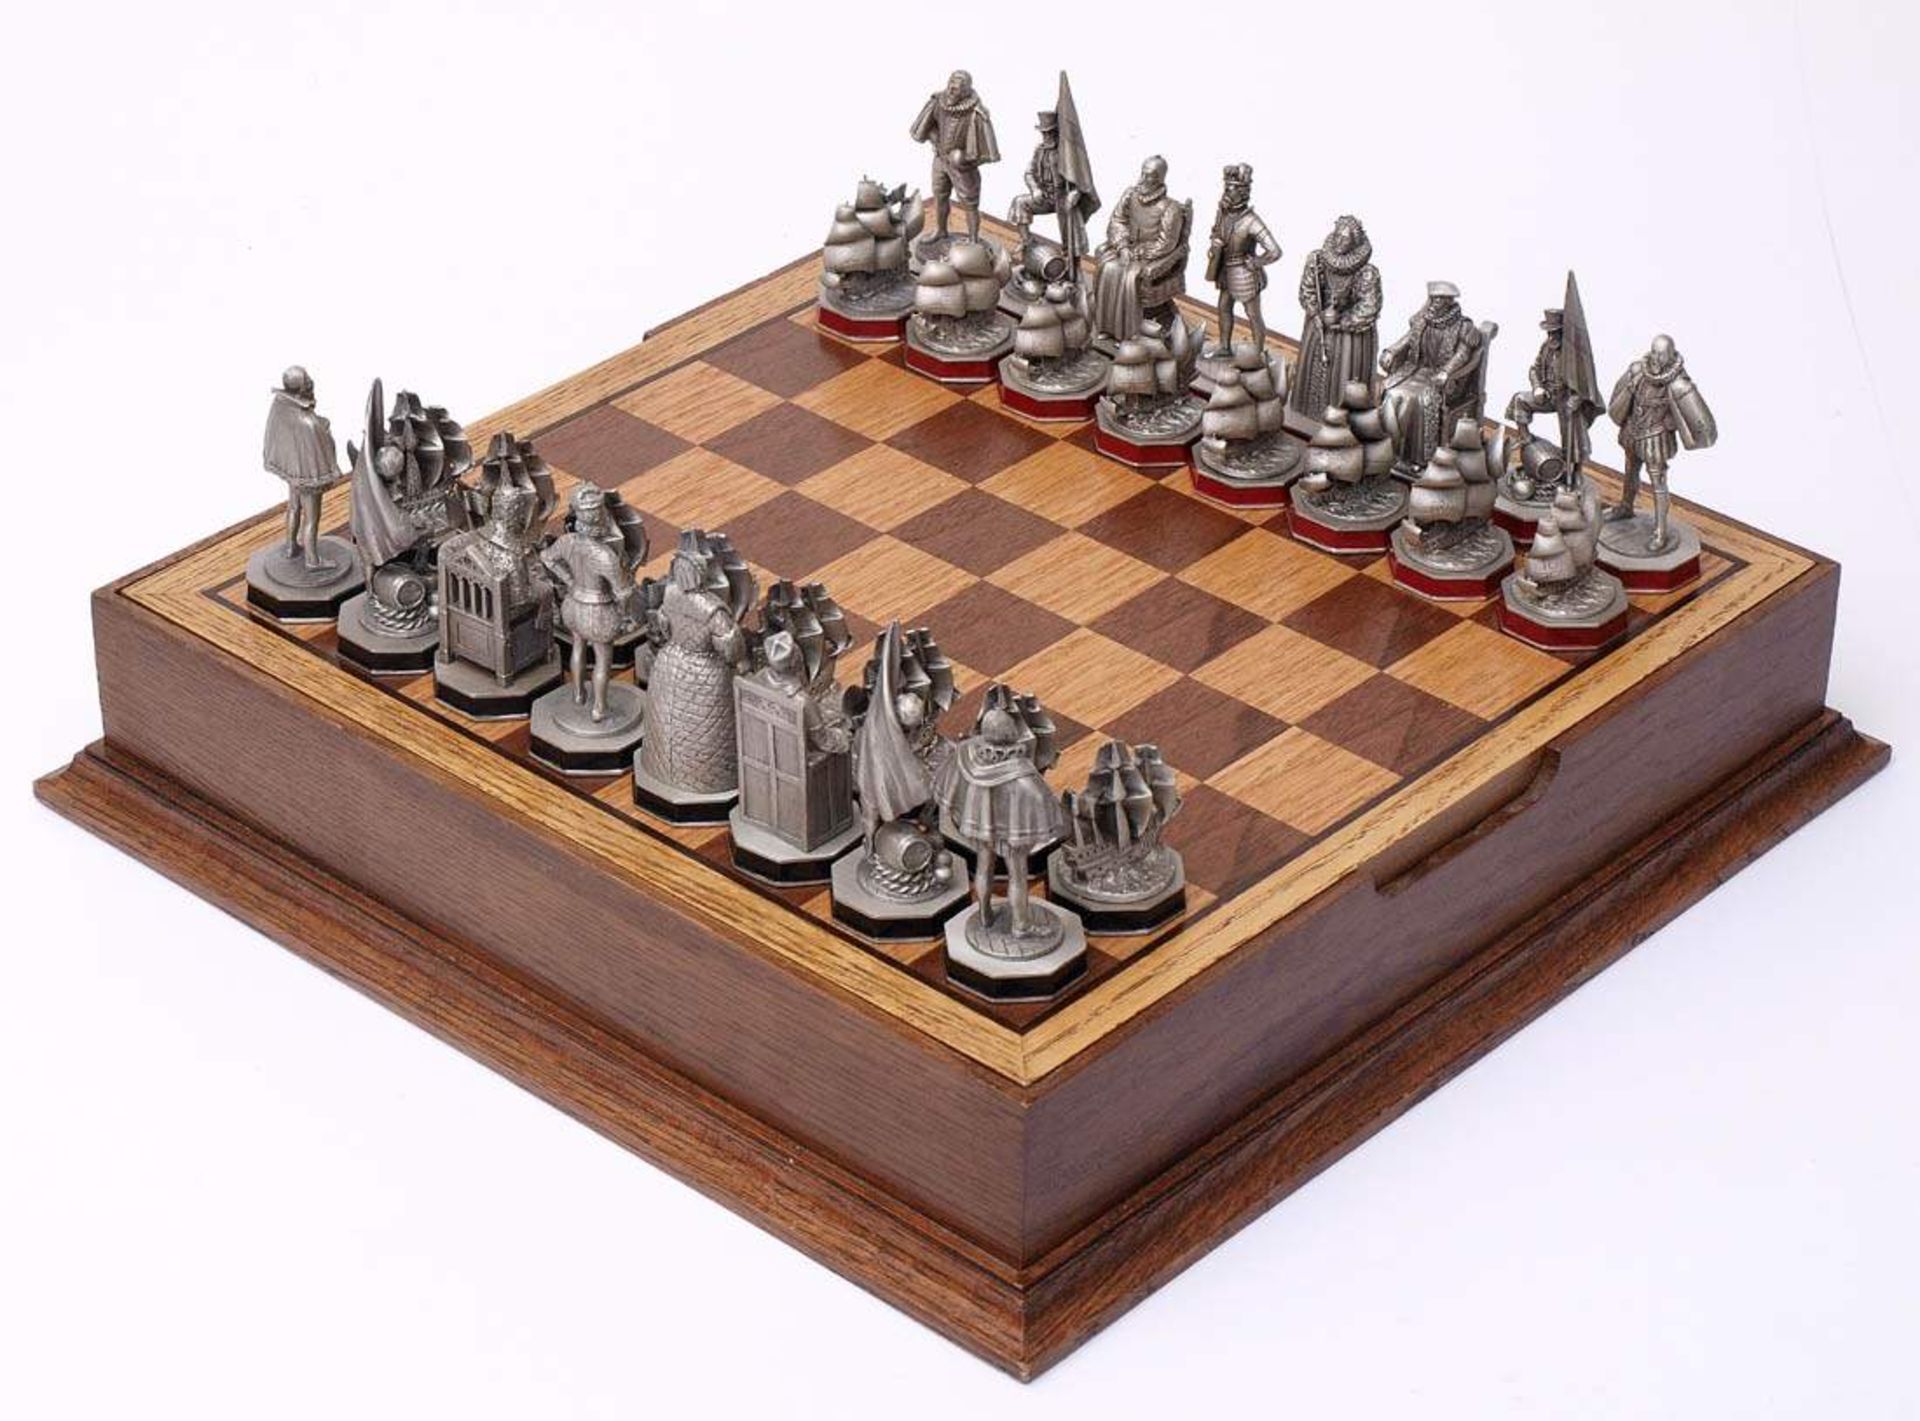 SchachspielArmada-Schachspiel, Extec-Edition. Zinnerne Figuren in Form von Schiffen und Personen